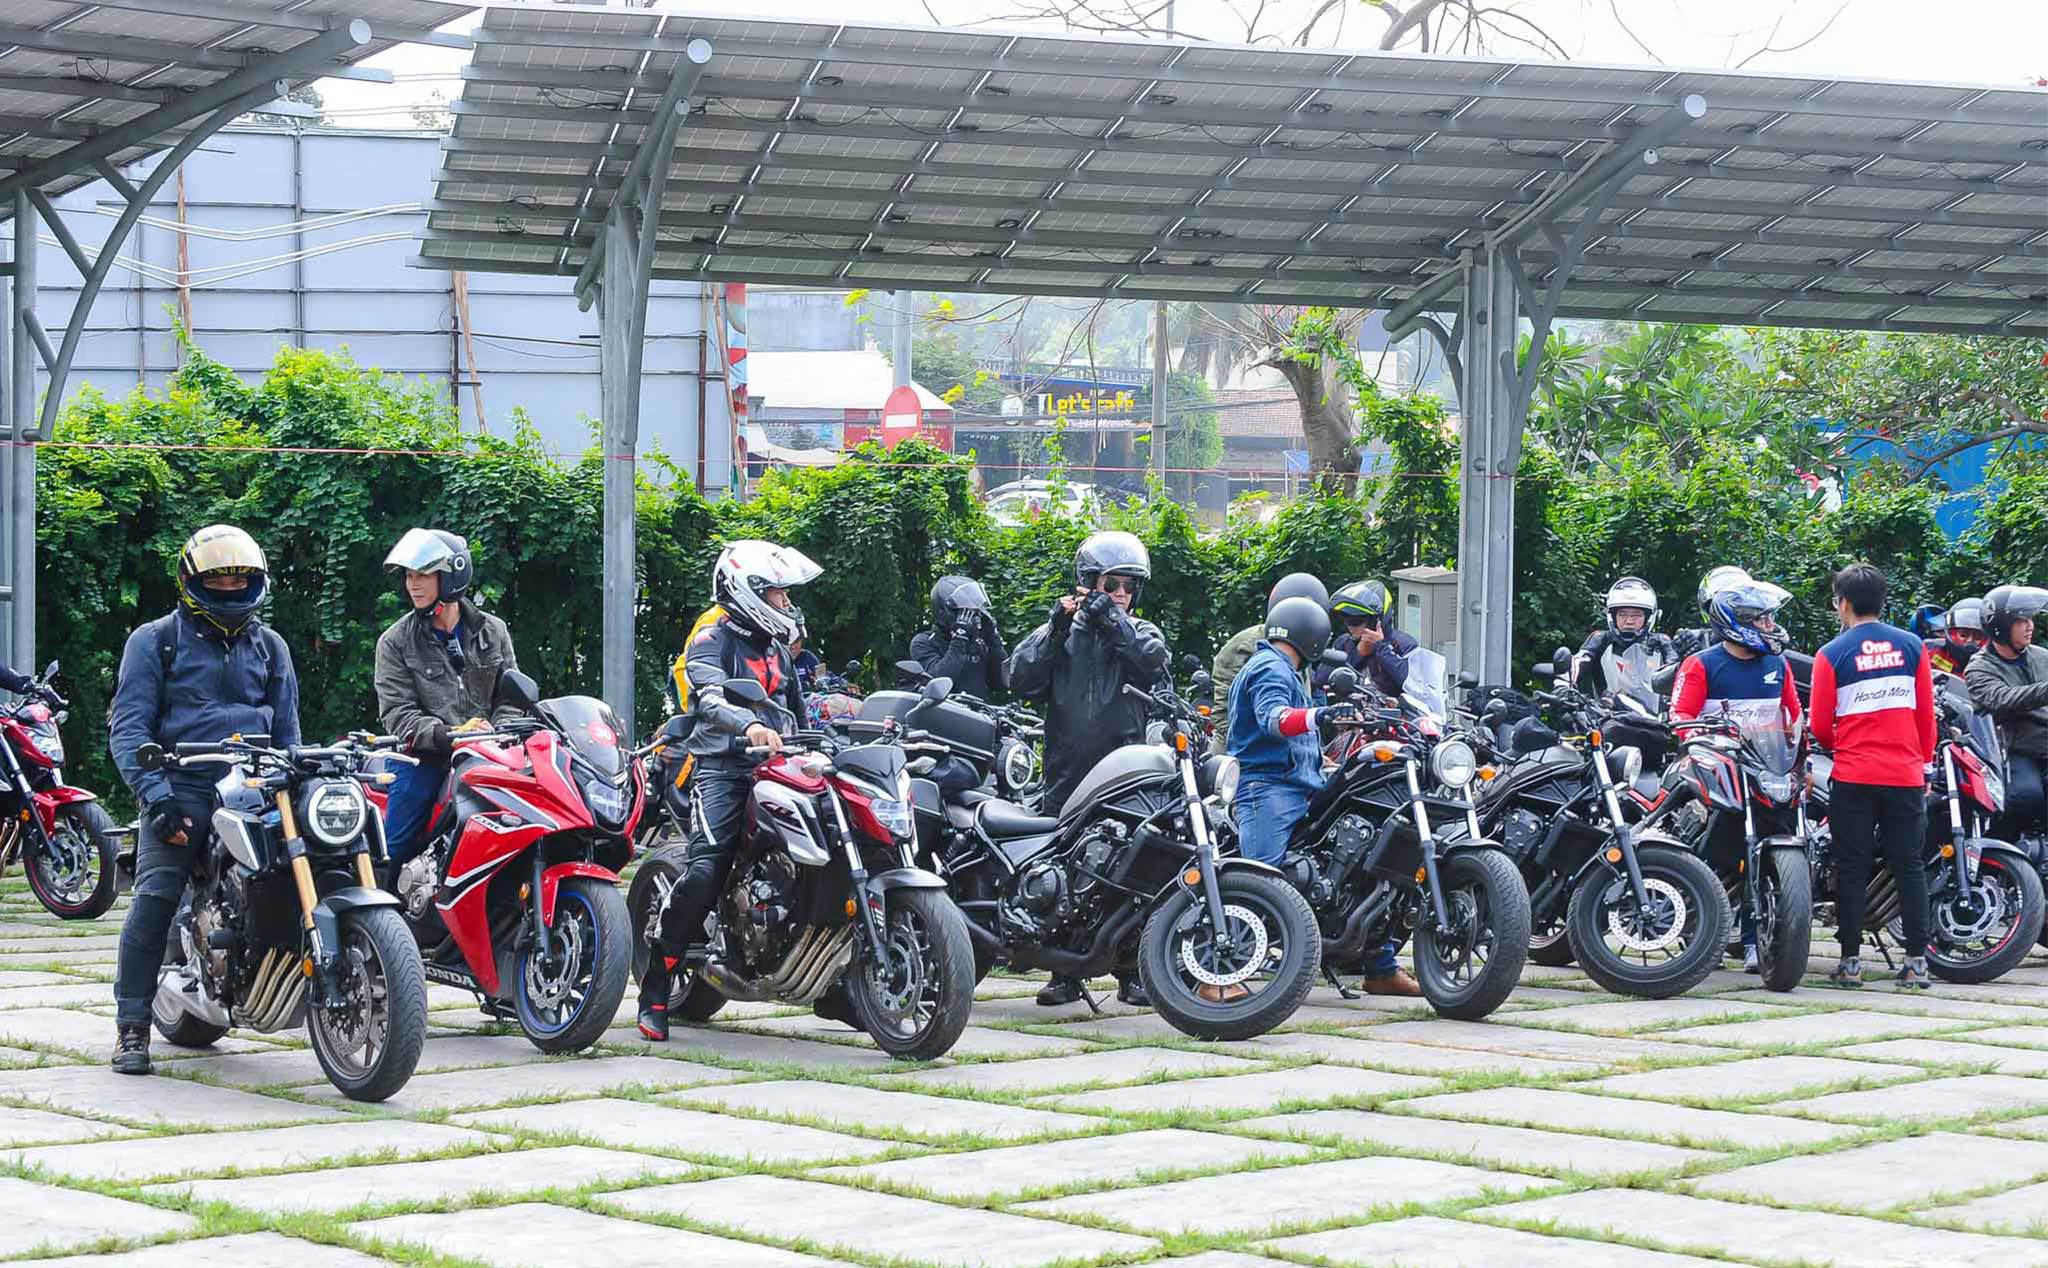 Đại hội mô tô Honda Biker Day 2020 sẽ bắt đầu từ ngày mai